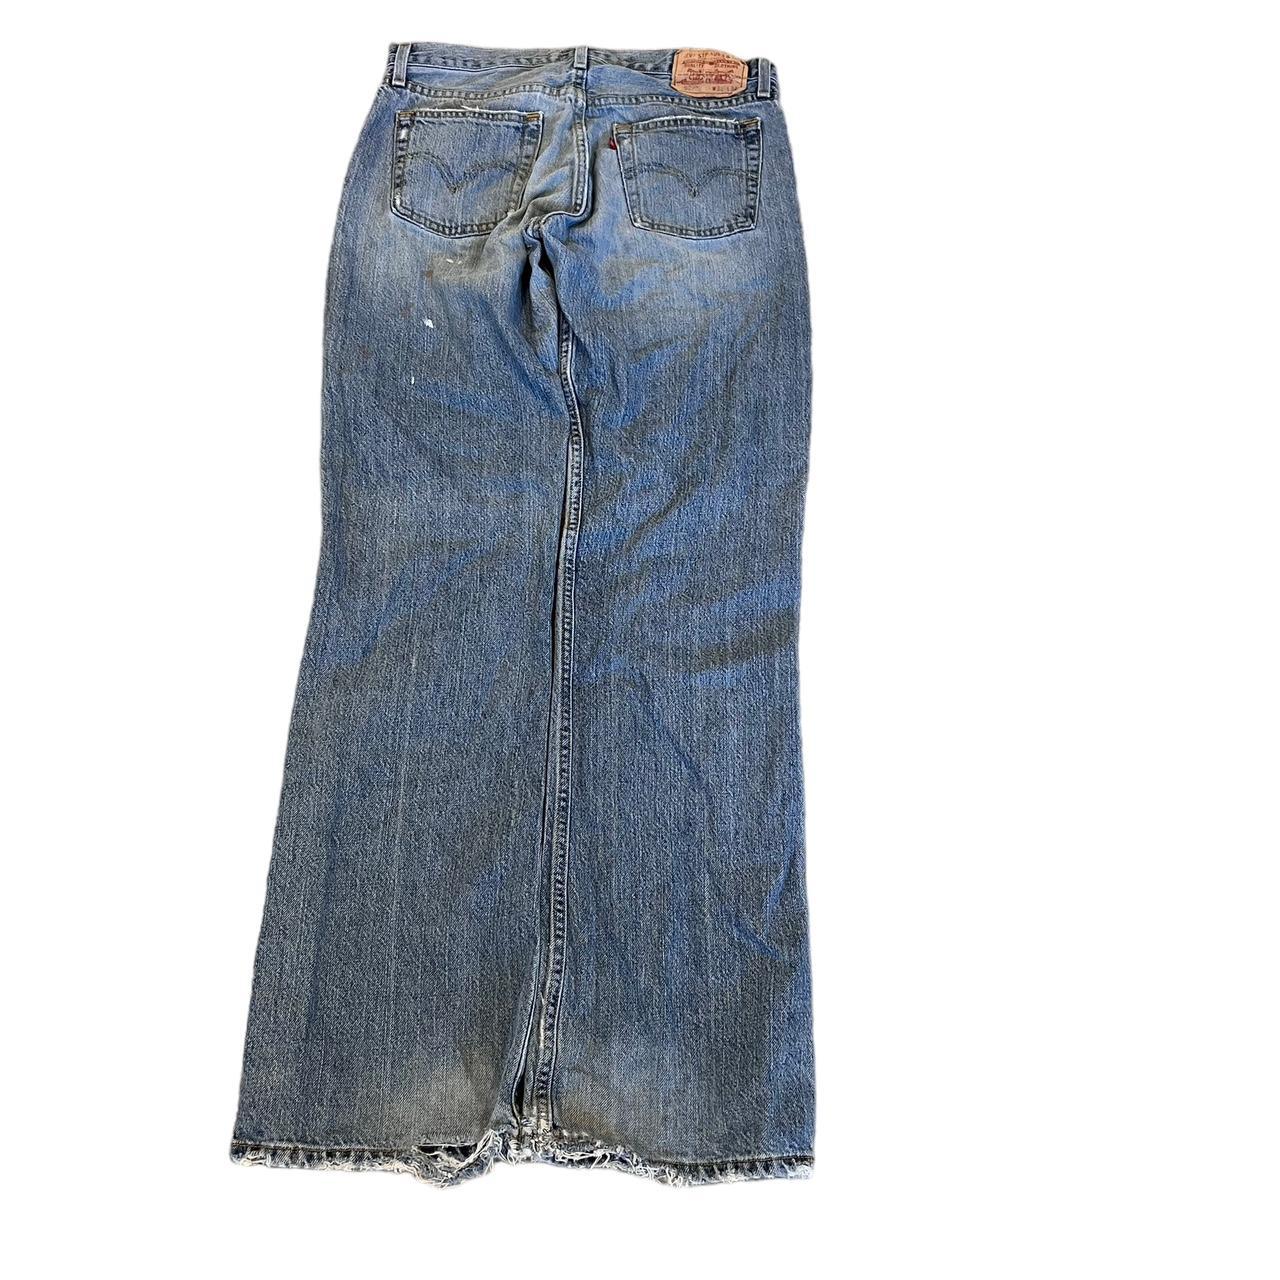 Super soft vintage 90s Levi Lee jeans 32/34 baggy... - Depop